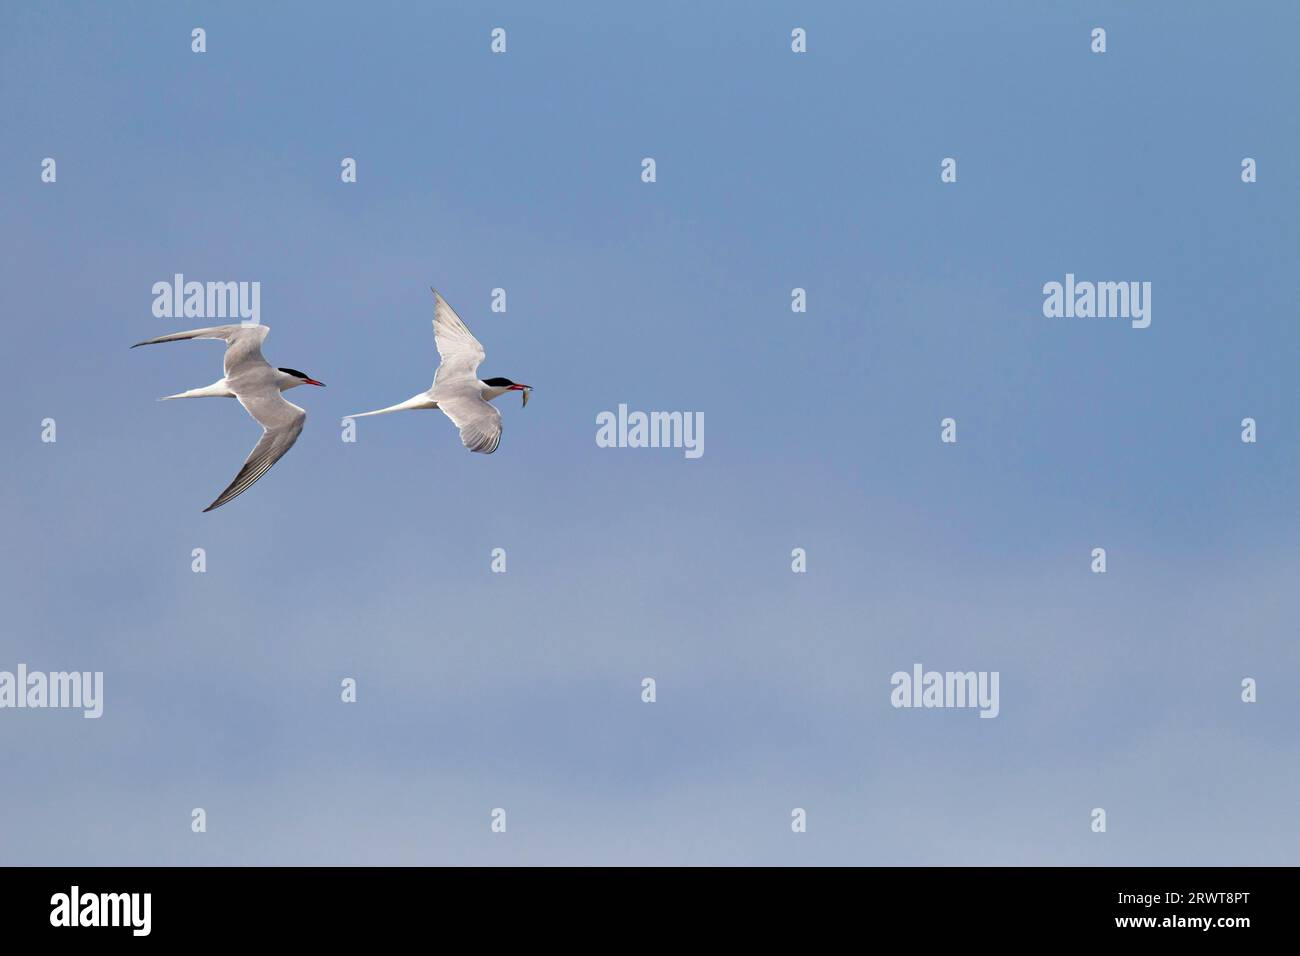 Il comune Tern (Sterna hirundo) è un migrante a lunga distanza (Photo air combat between adult Birds), il comune Tern la maggior parte delle popolazioni sono migratorie (Photo Air Foto Stock